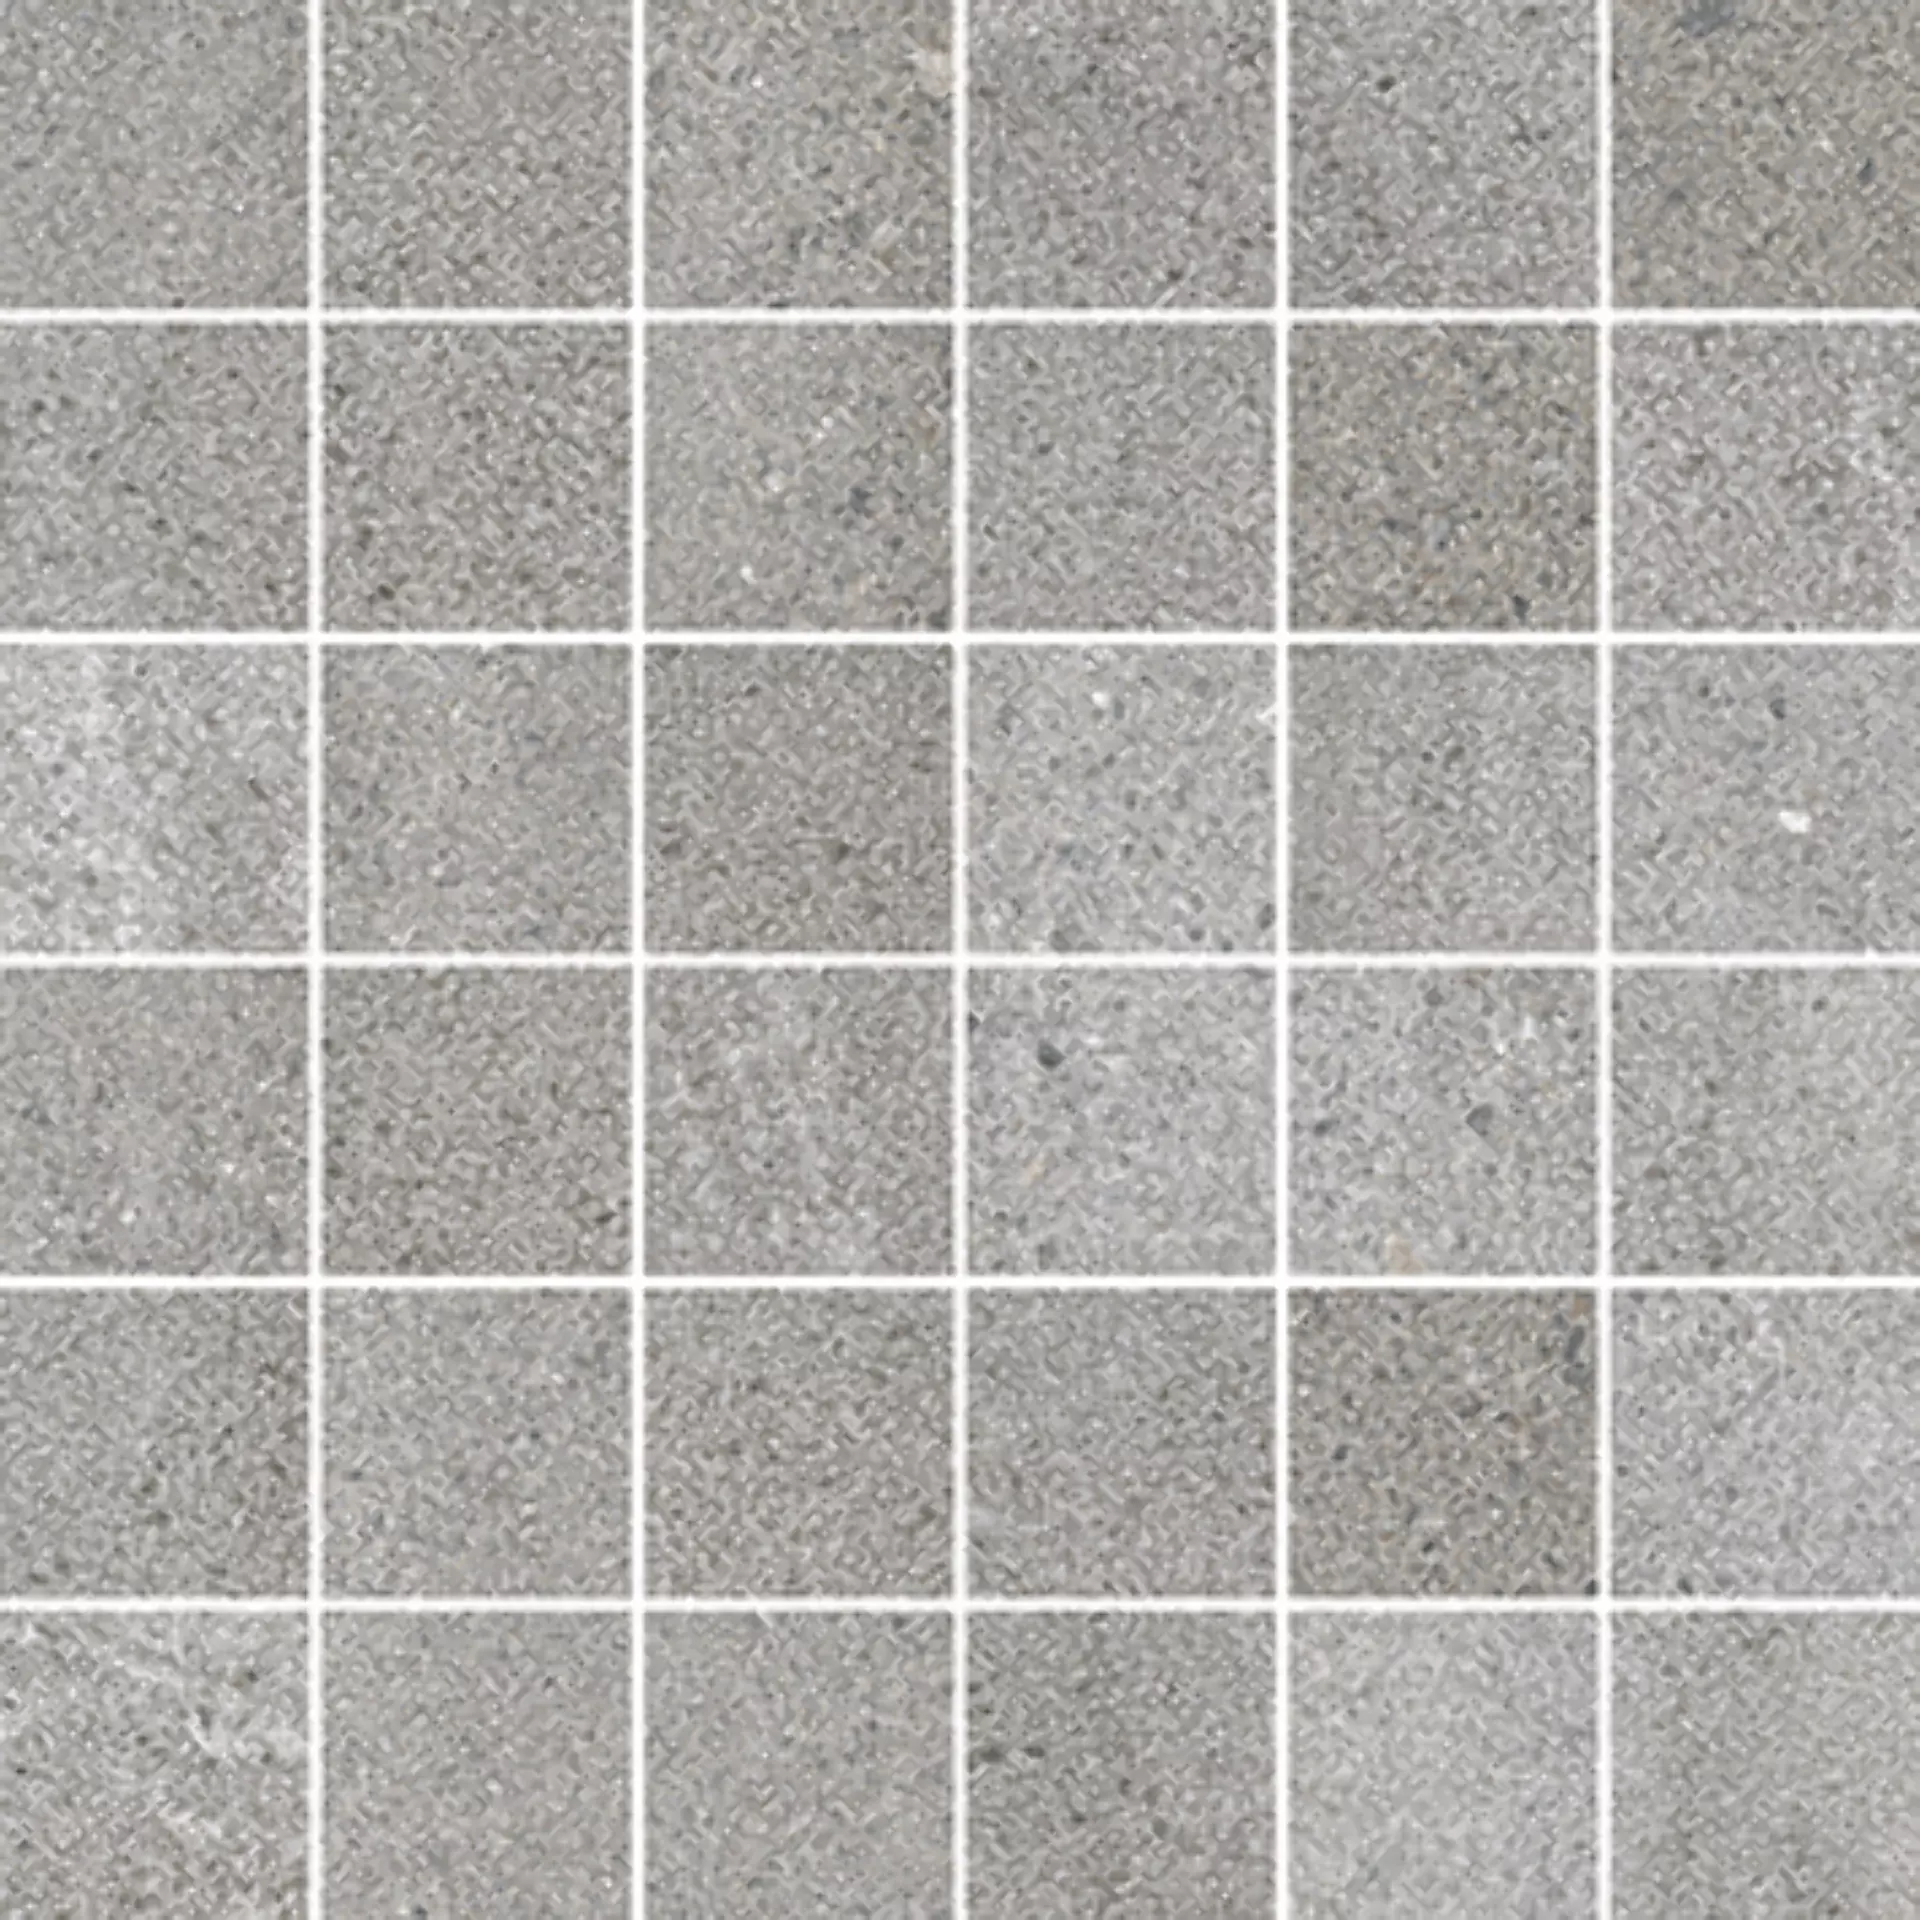 Wandfliese,Bodenfliese Villeroy & Boch Natural Blend Stone Grey Matt Stone Grey 2030-LY60 matt 5x5cm Mosaik (5x5) rektifiziert 10mm